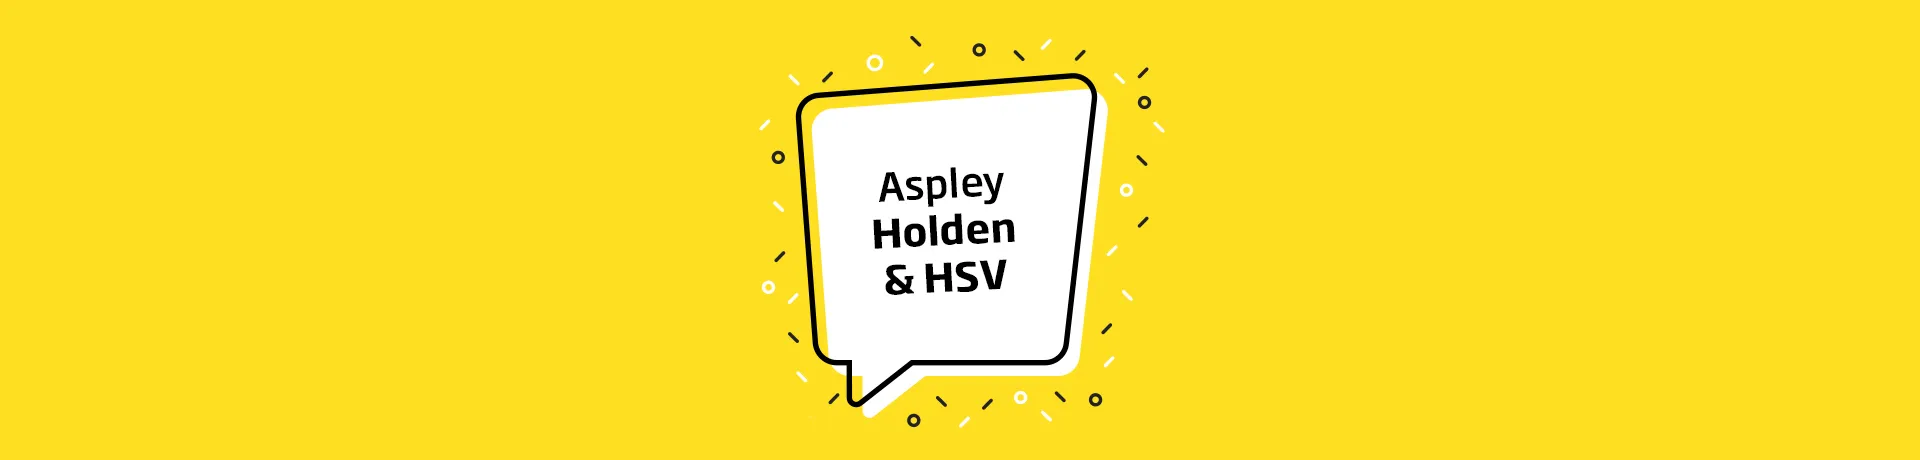 Aspley Holden Customer Feedback Page